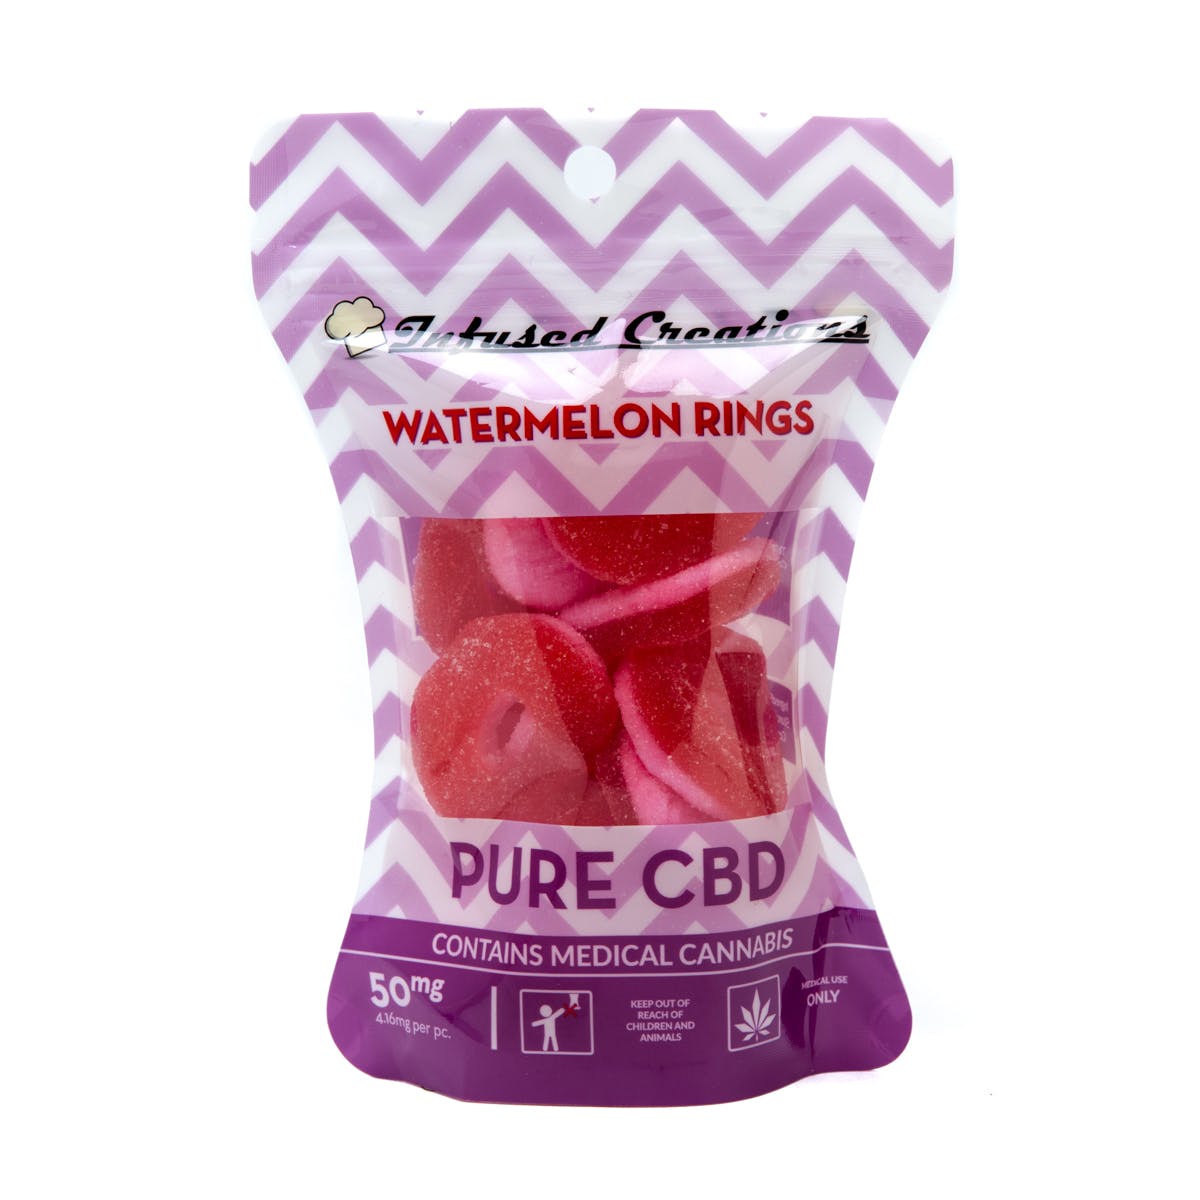 Watermelon Rings Pure CBD, 50mg